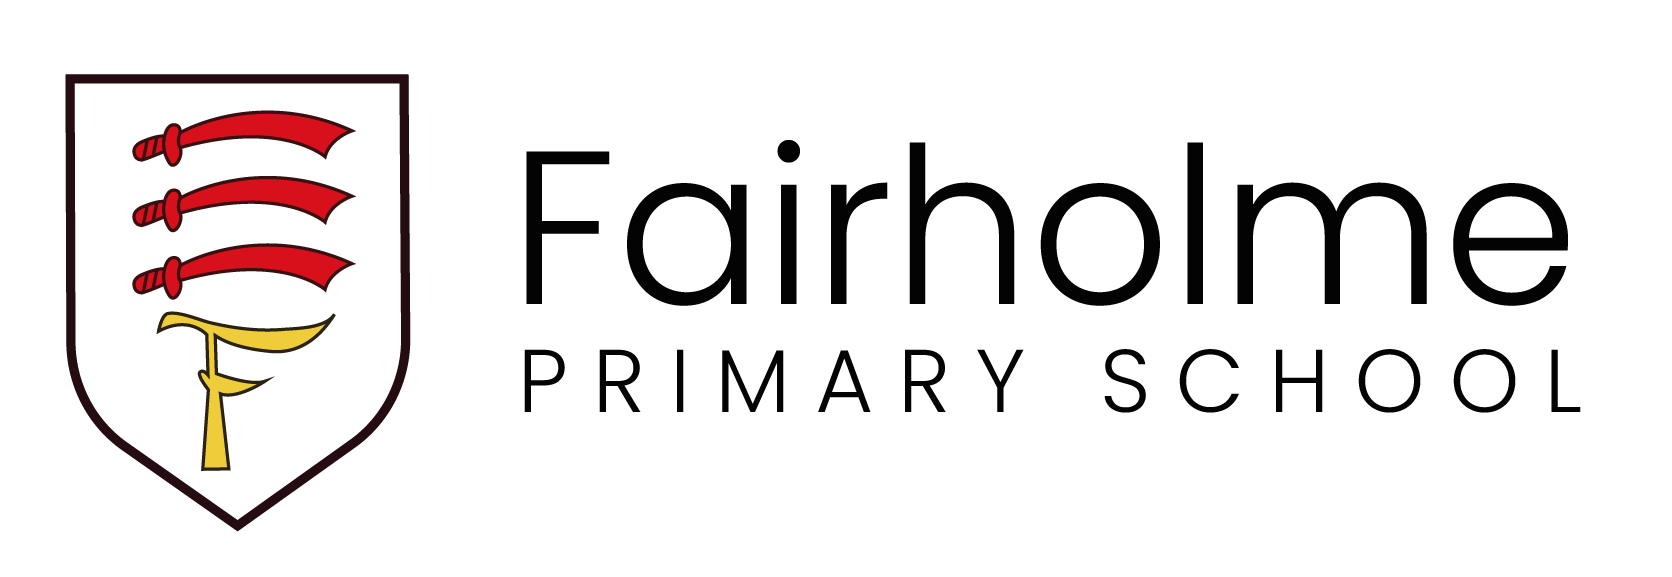 Fairholme Primary School